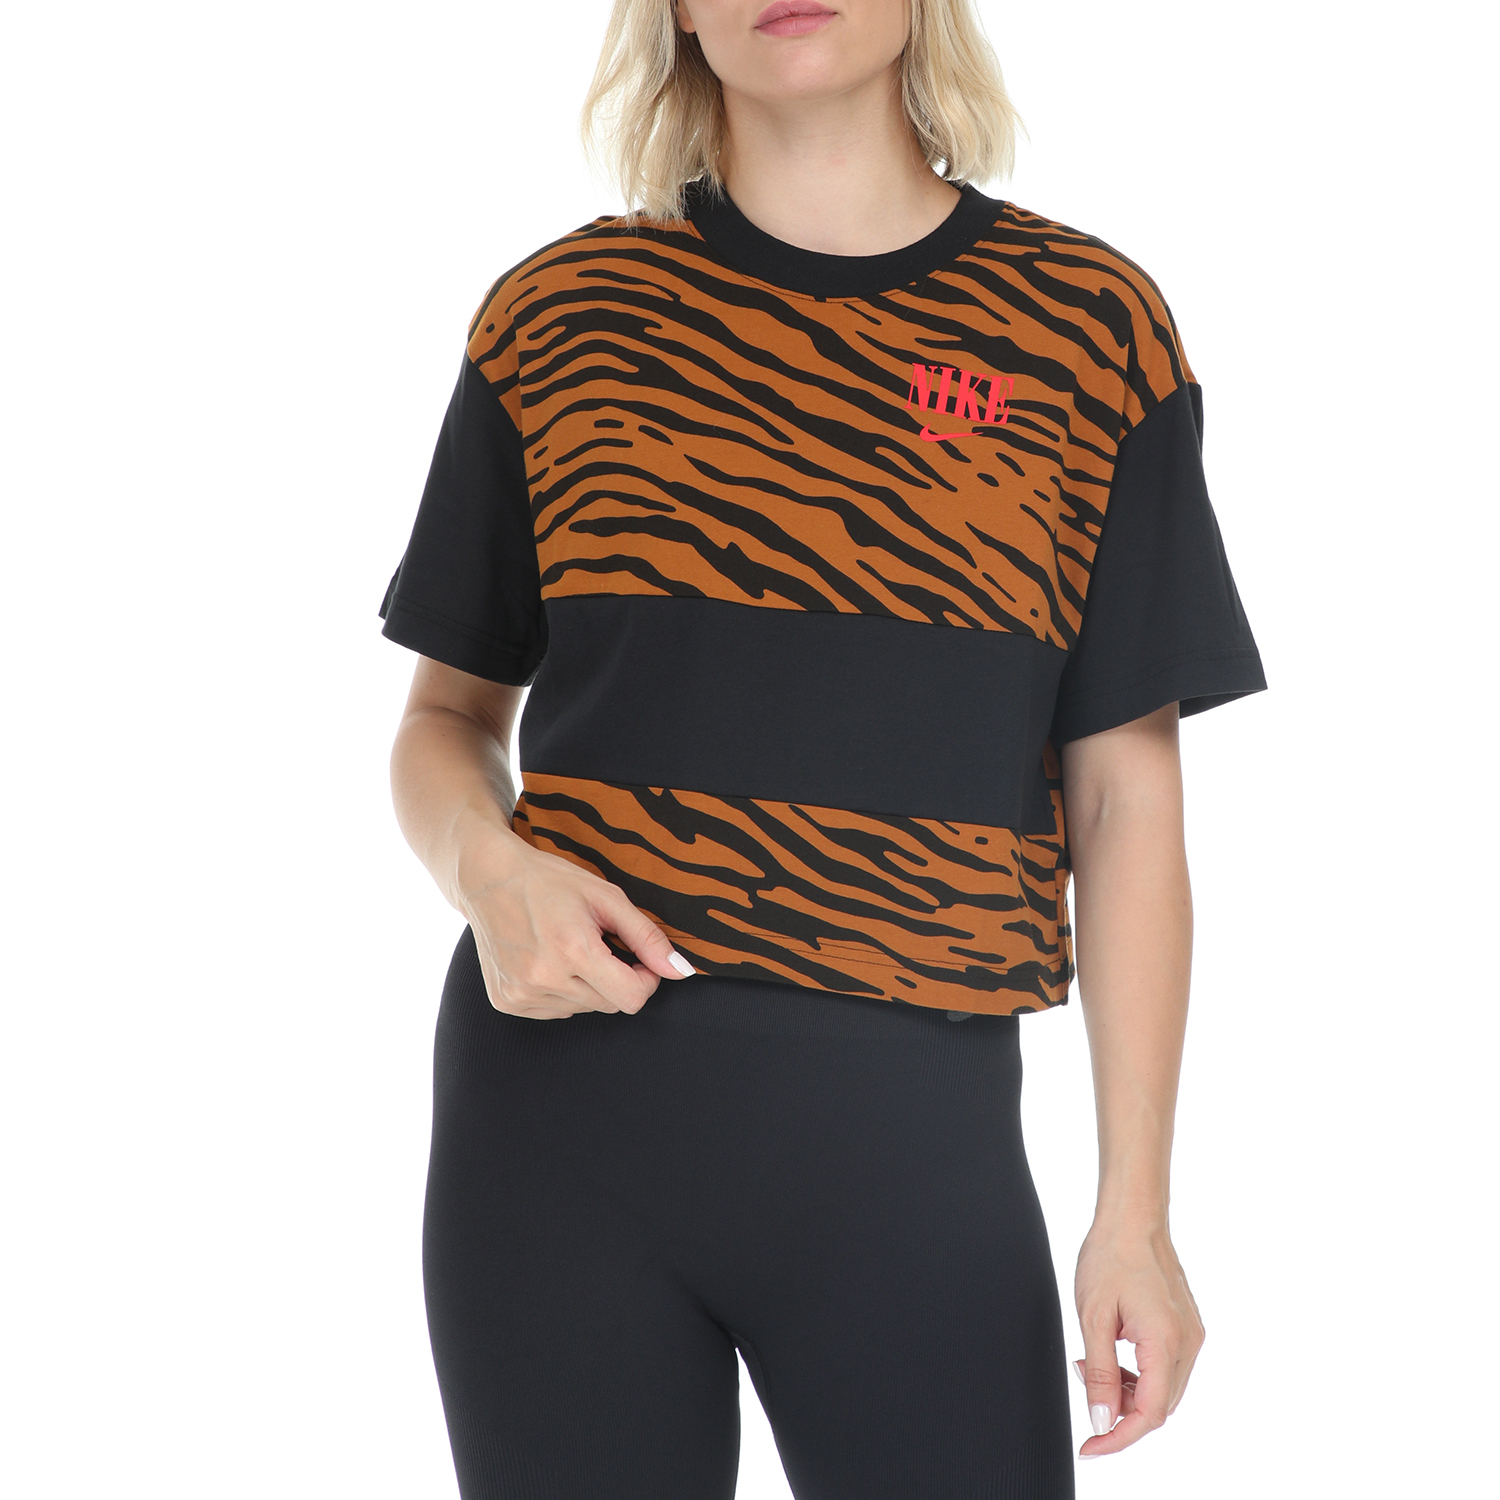 Γυναικεία/Ρούχα/Αθλητικά/T-shirt-Τοπ NIKE - Γυναικεία κοντομάνικη μπλούζα NIKE ESSNTL TOP SS AOP μαύρη-καφέ